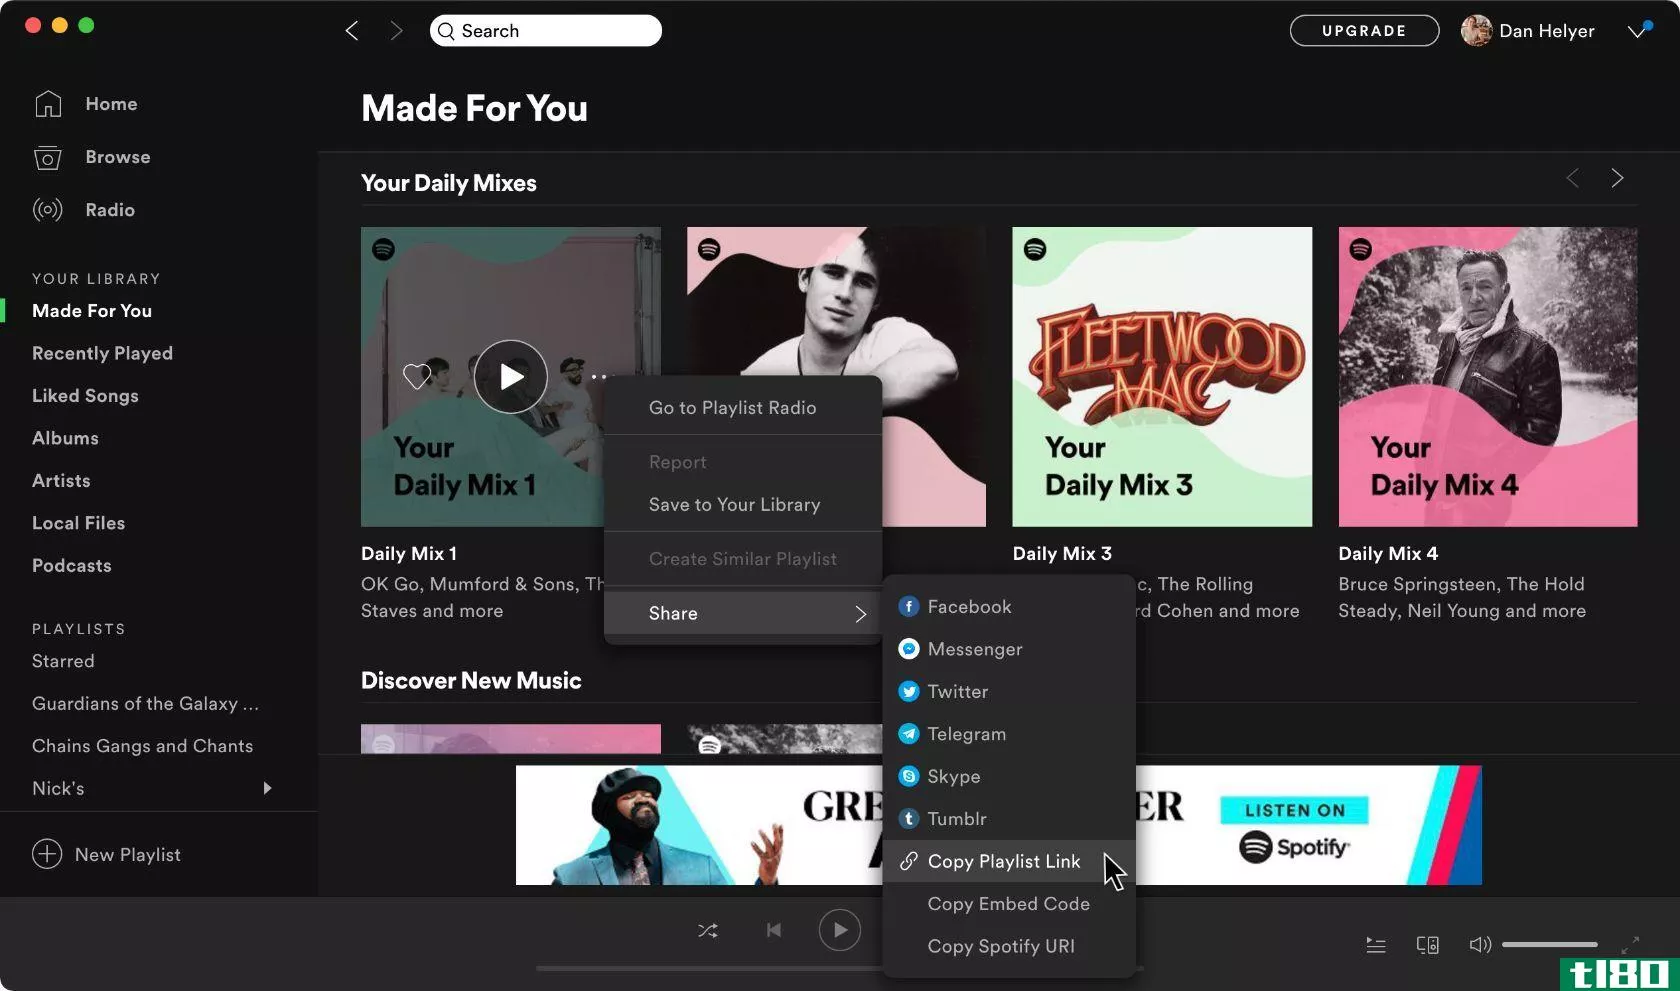 Spotify copy playlist link option